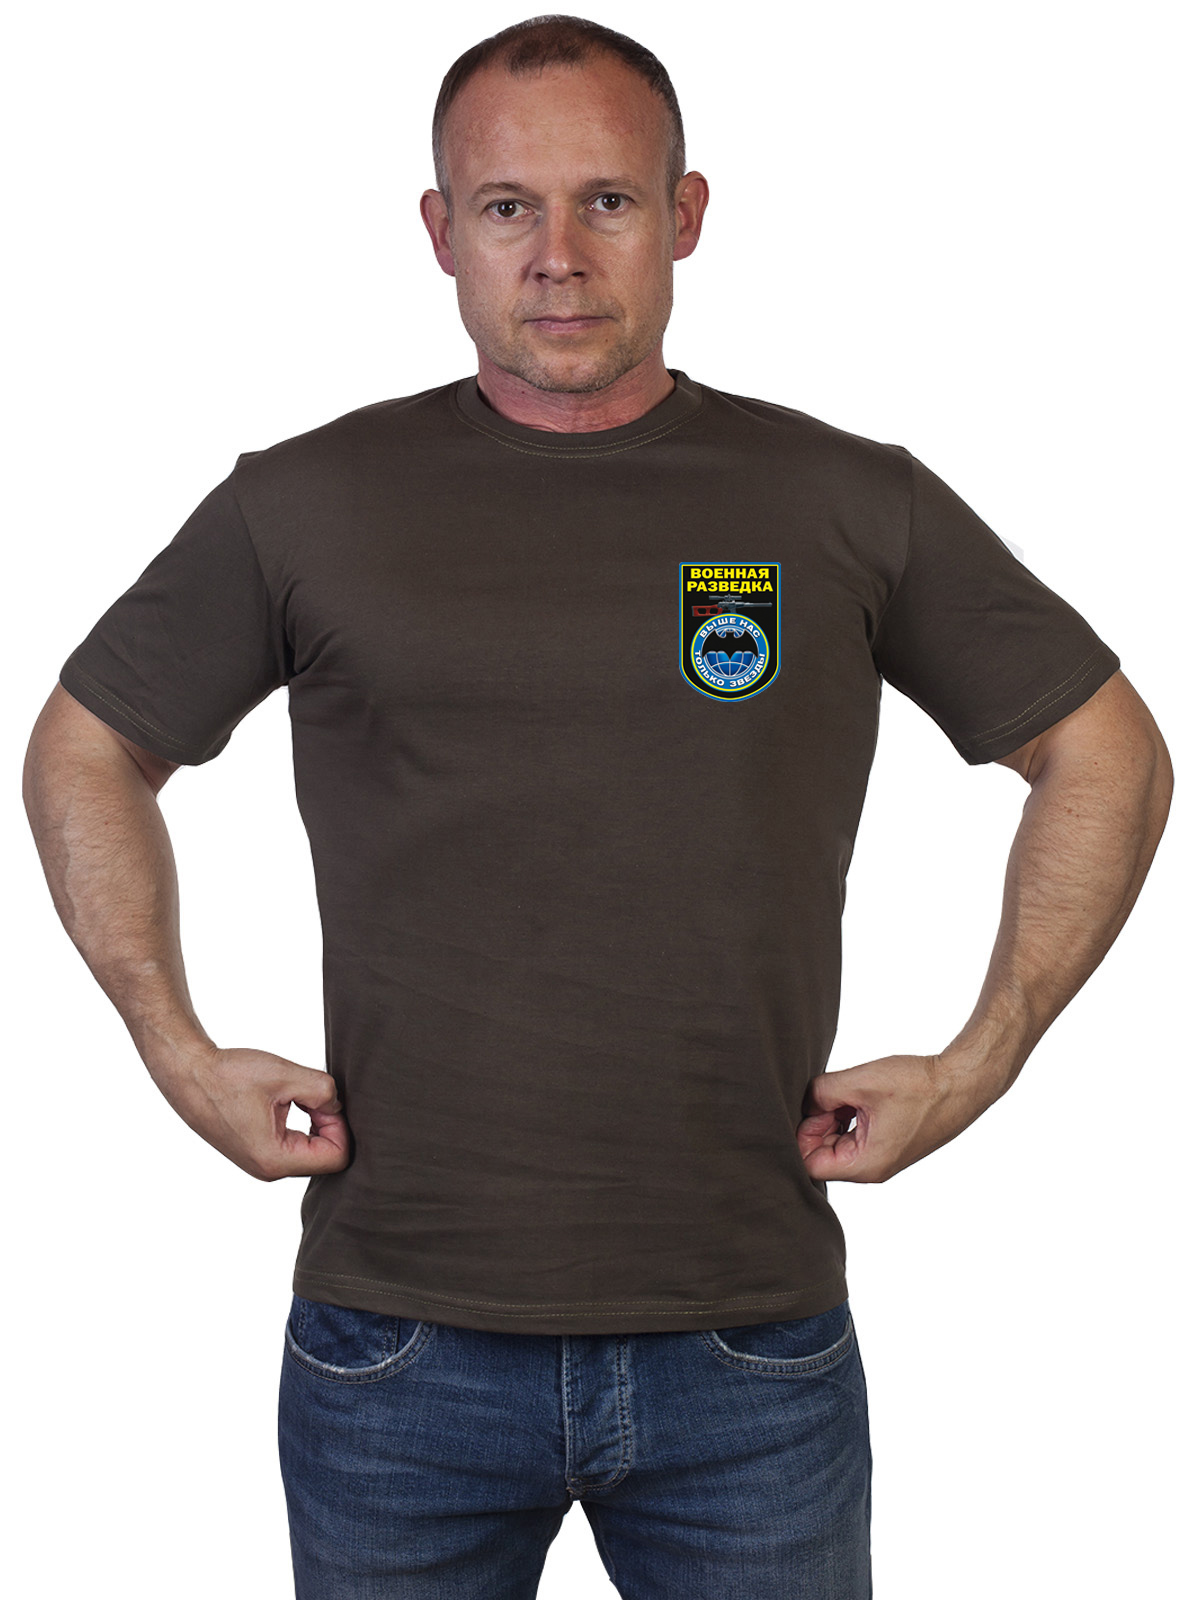 Оливковая футболка "Военная разведка" с девизом 